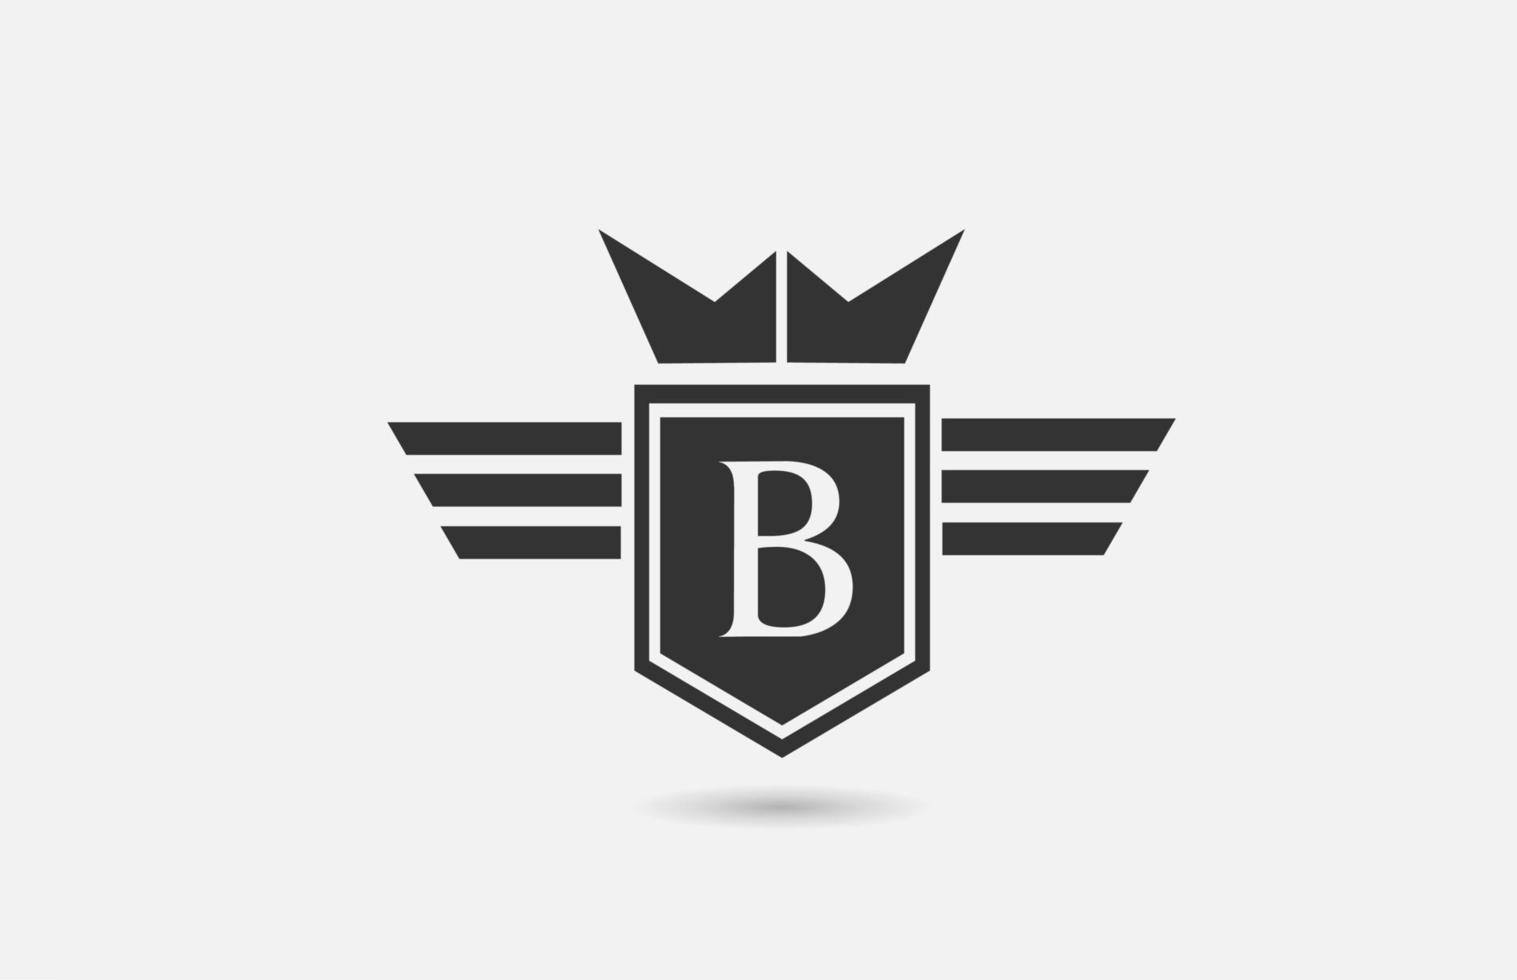 b alfabet letterpictogram logo voor bedrijf in zwart-wit. creatief badgeontwerp met koningskroonvleugels en schild voor bedrijven en bedrijven vector